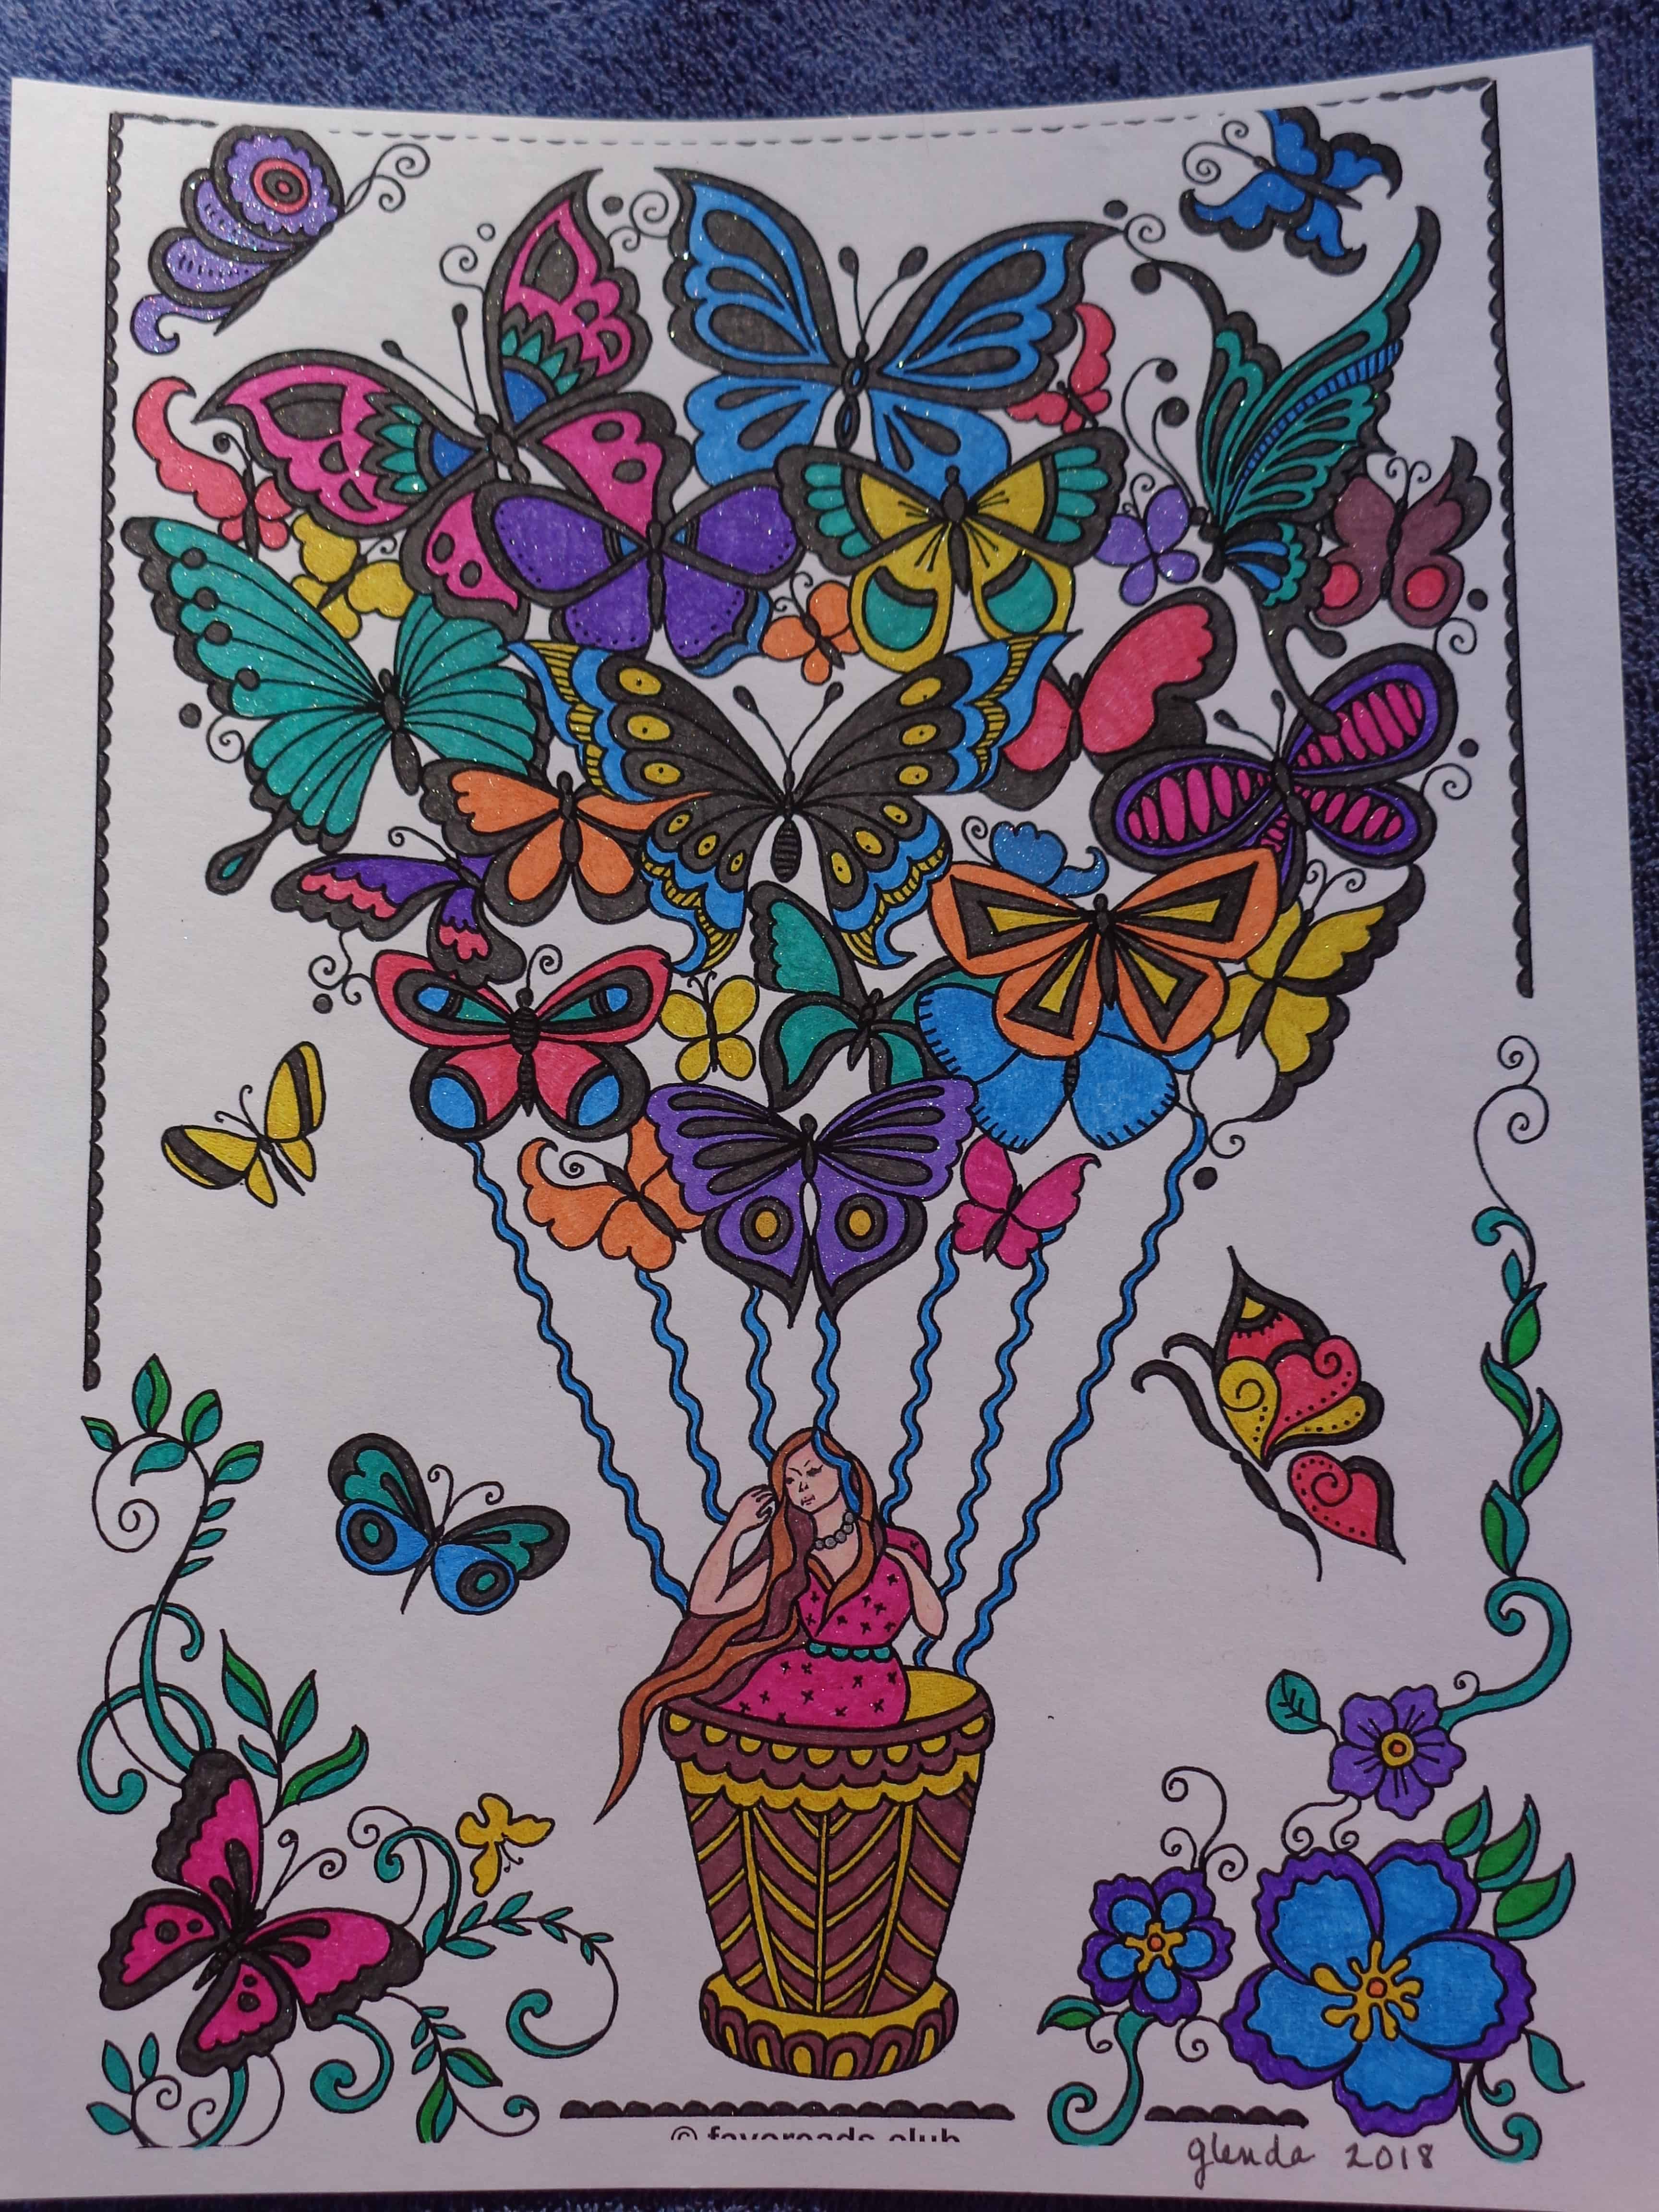 The World of Butterflies – Butterfly Balloon